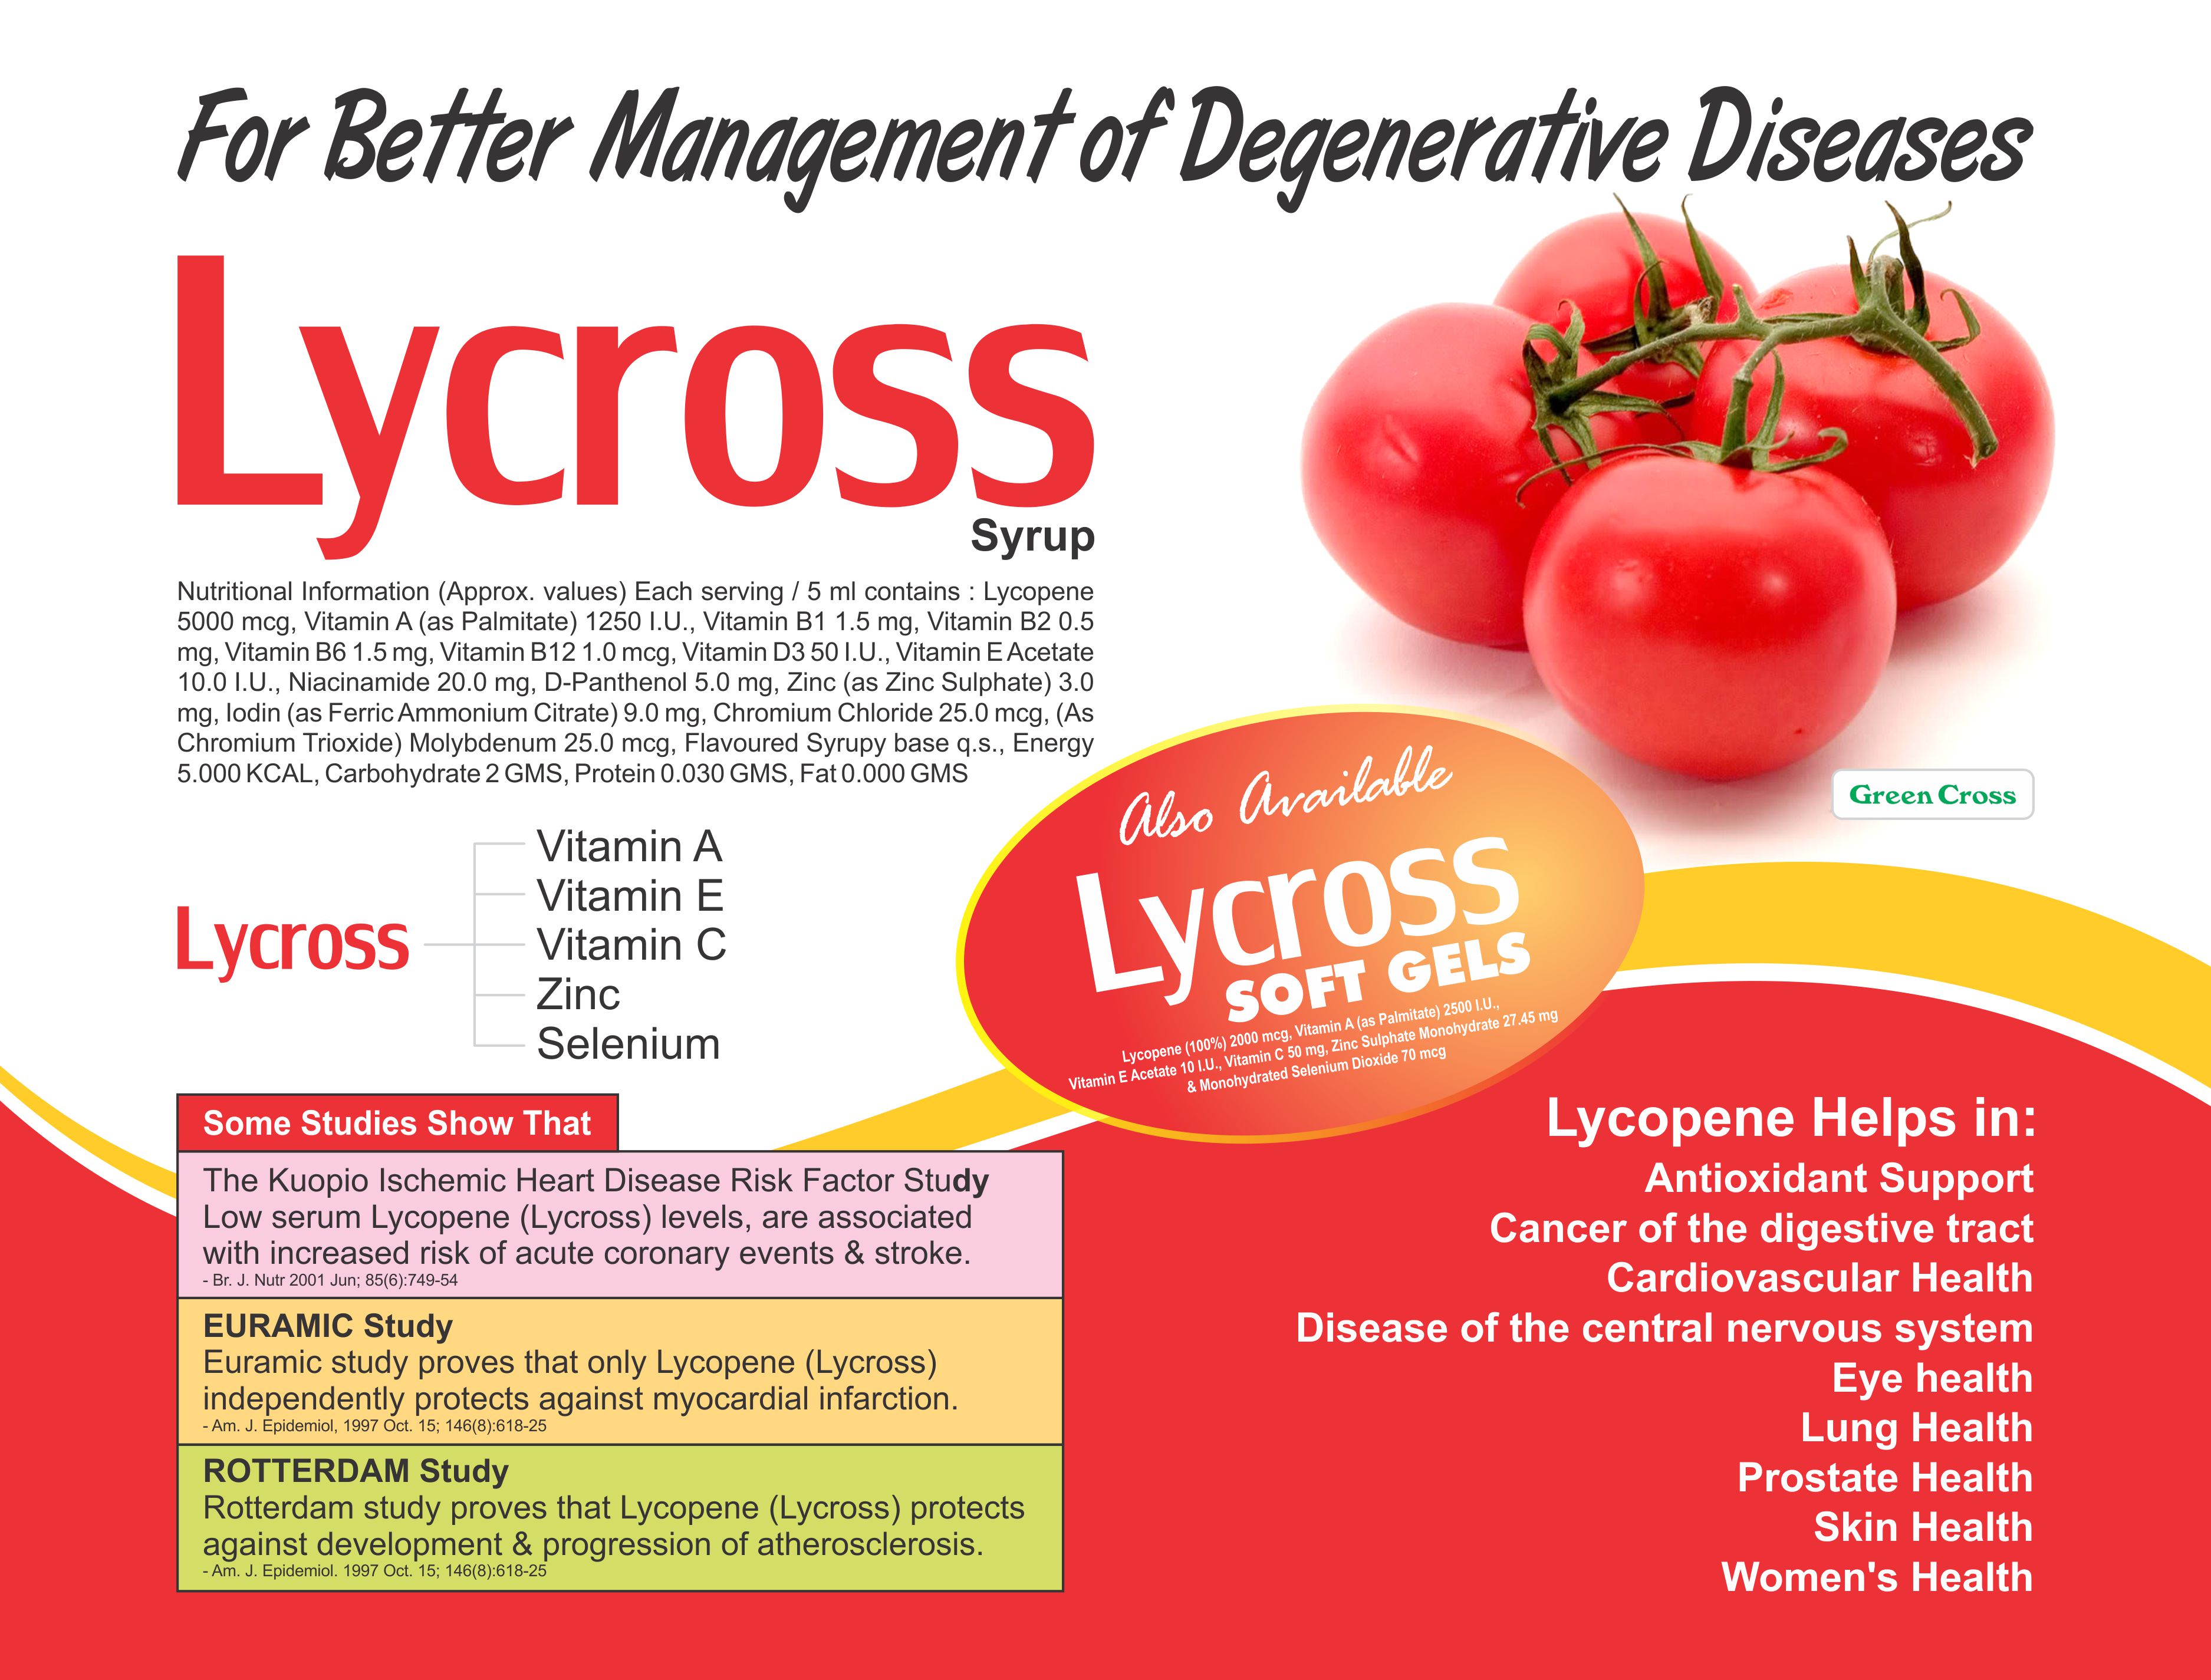 LYCROSS Softsule